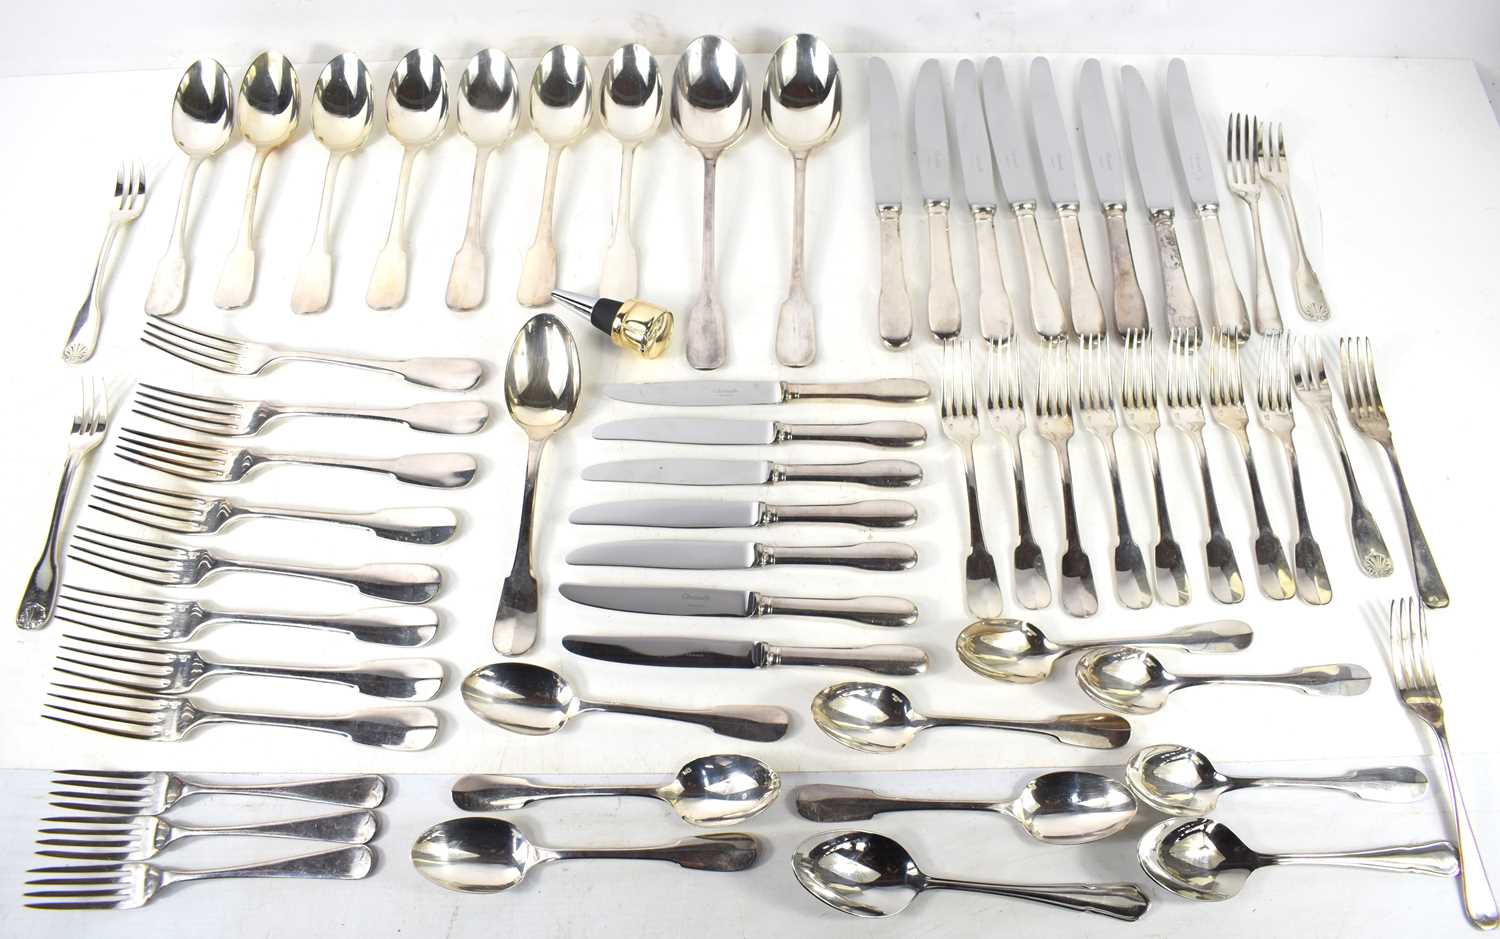 A set of Christofle plated flatwares comprising eight knives, butter knives, forks, dessert forks, - Image 2 of 6